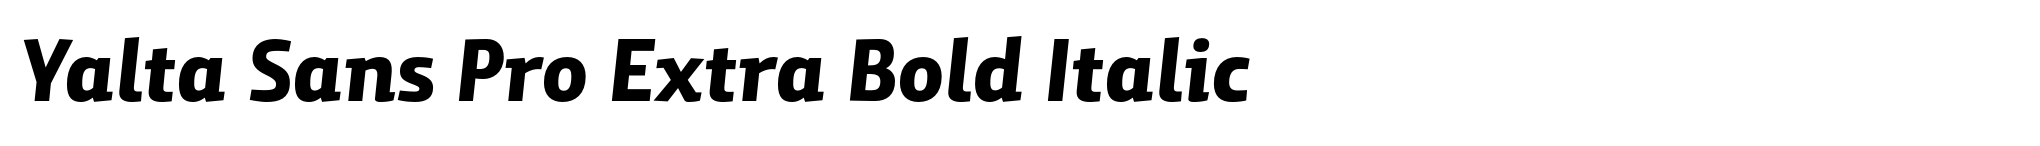 Yalta Sans Pro Extra Bold Italic image